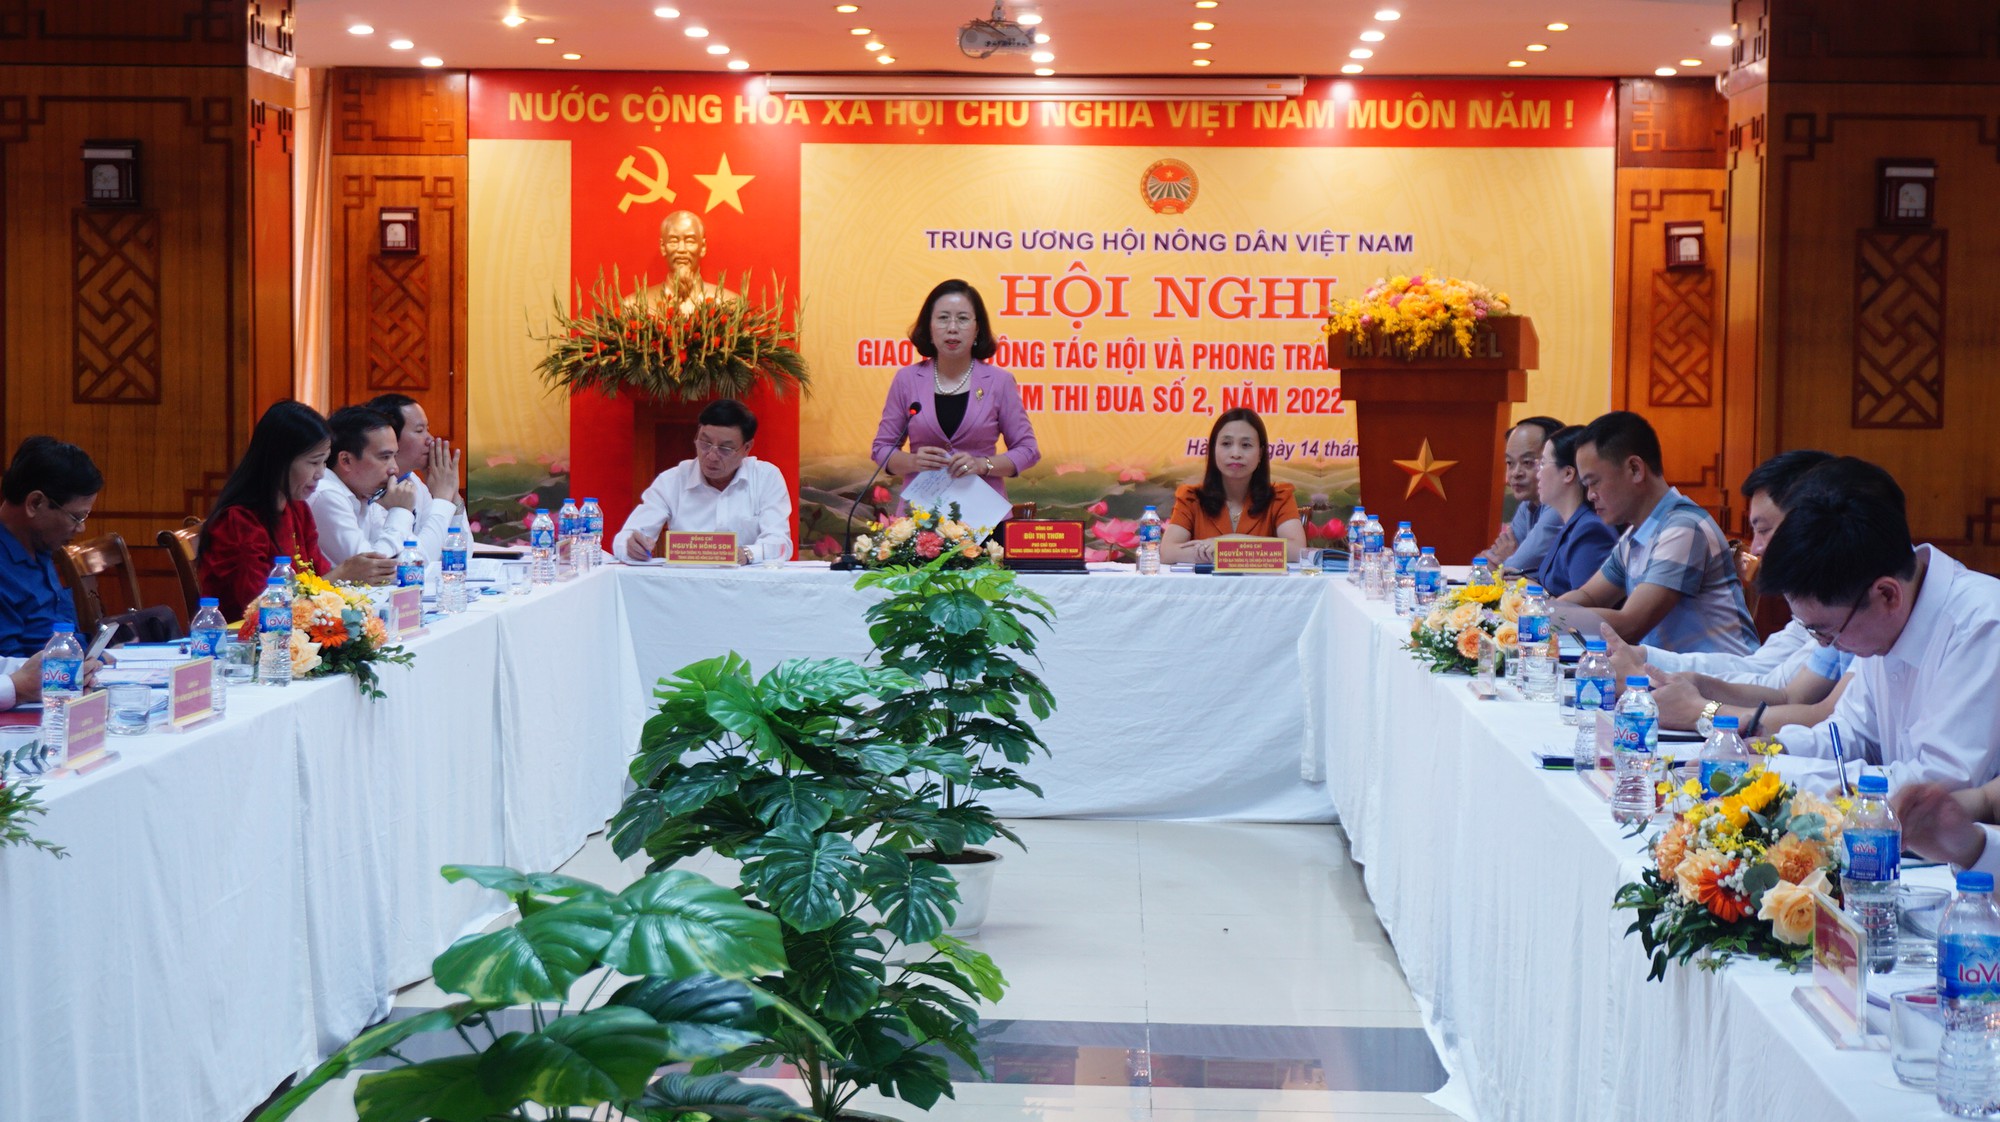 Phó Chủ tịch Hội NDVN Bùi Thị Thơm chủ trì hội nghị giao ban cụm thi đua số 2 tổ chức tại Hà Nội- Ảnh 1.